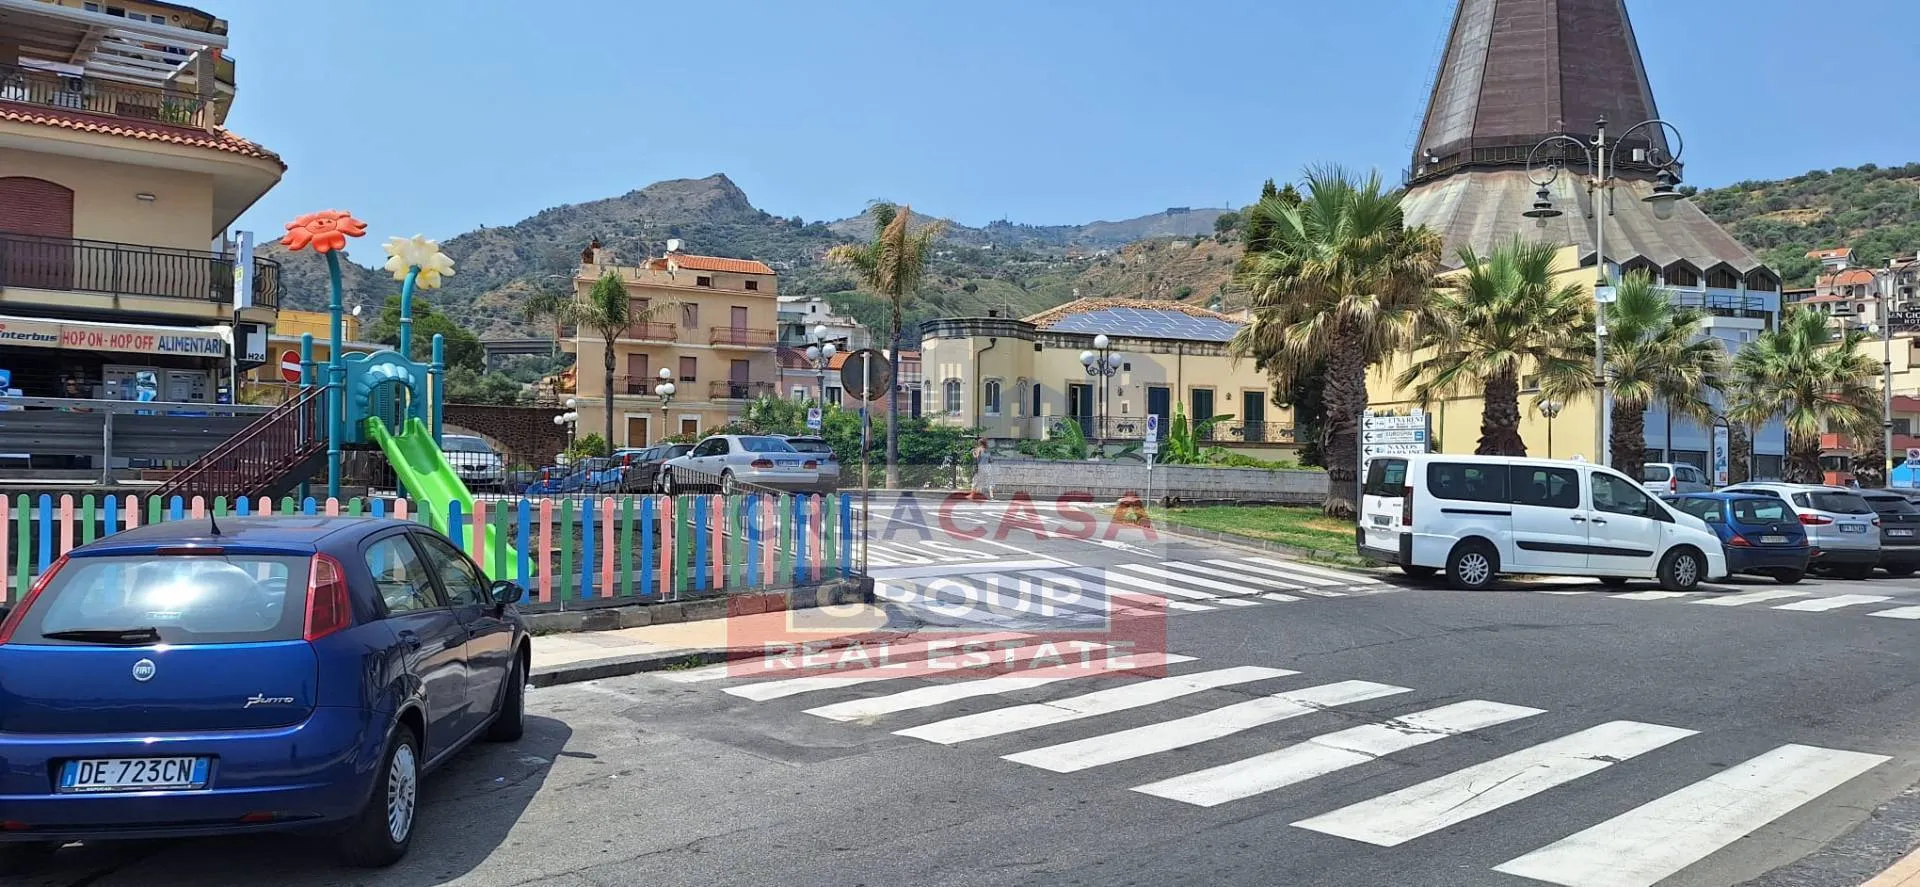 Immagine per Appartamento in vendita a Giardini-Naxos Via erice